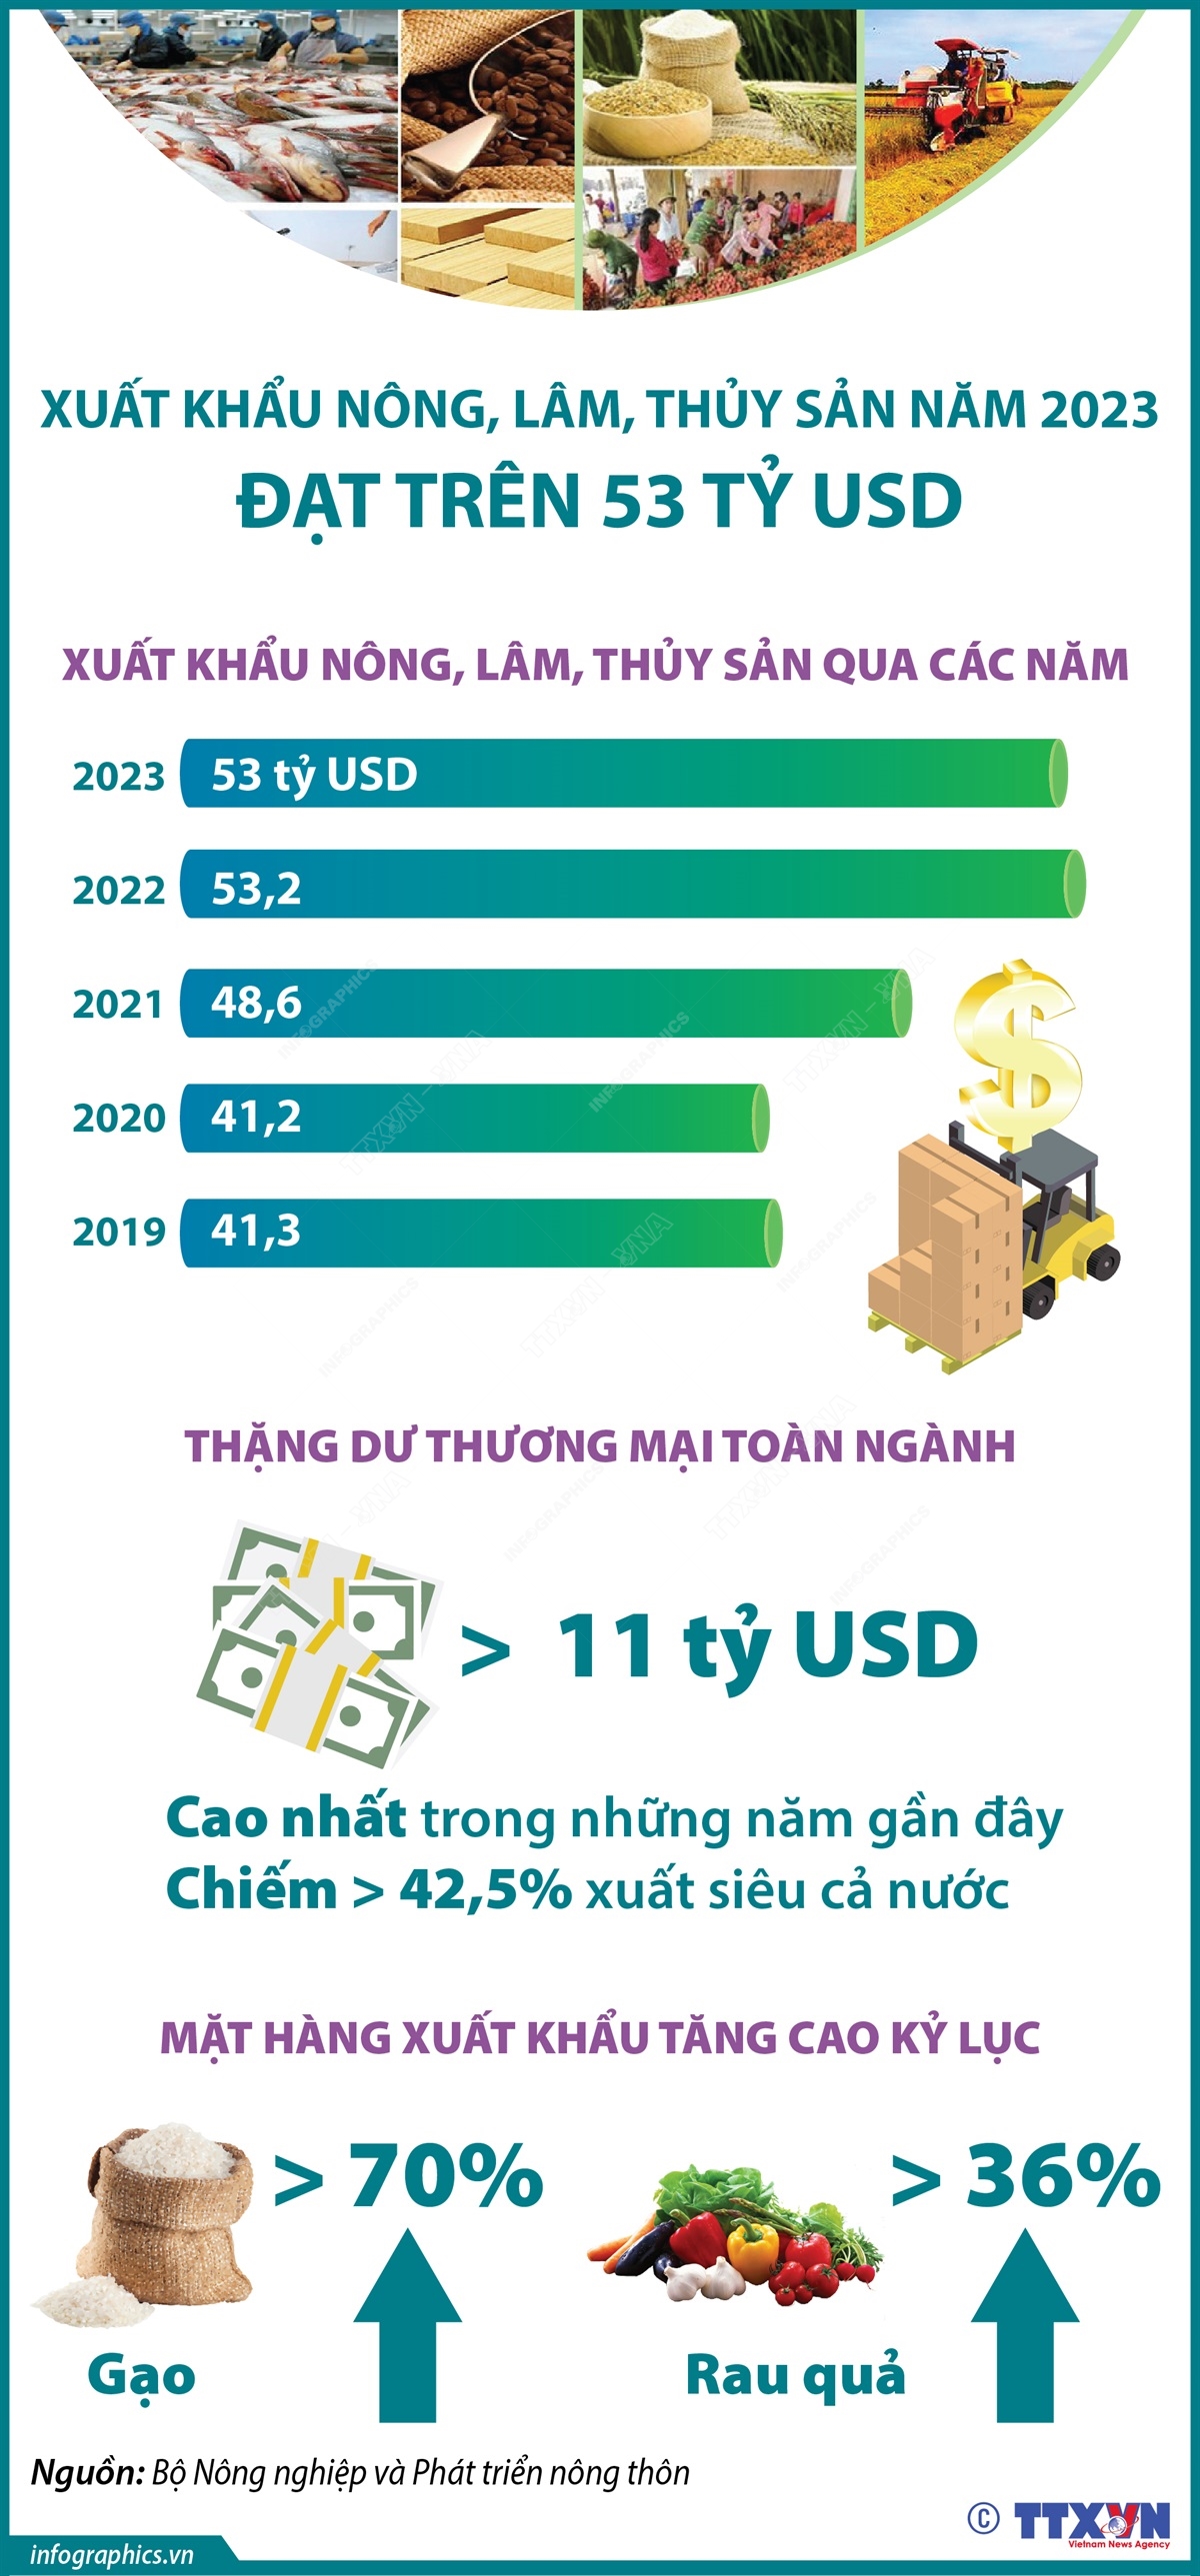 Xuất khẩu nông, lâm, thủy sản năm 2023 đạt trên 53 tỷ USD - Ảnh 1.